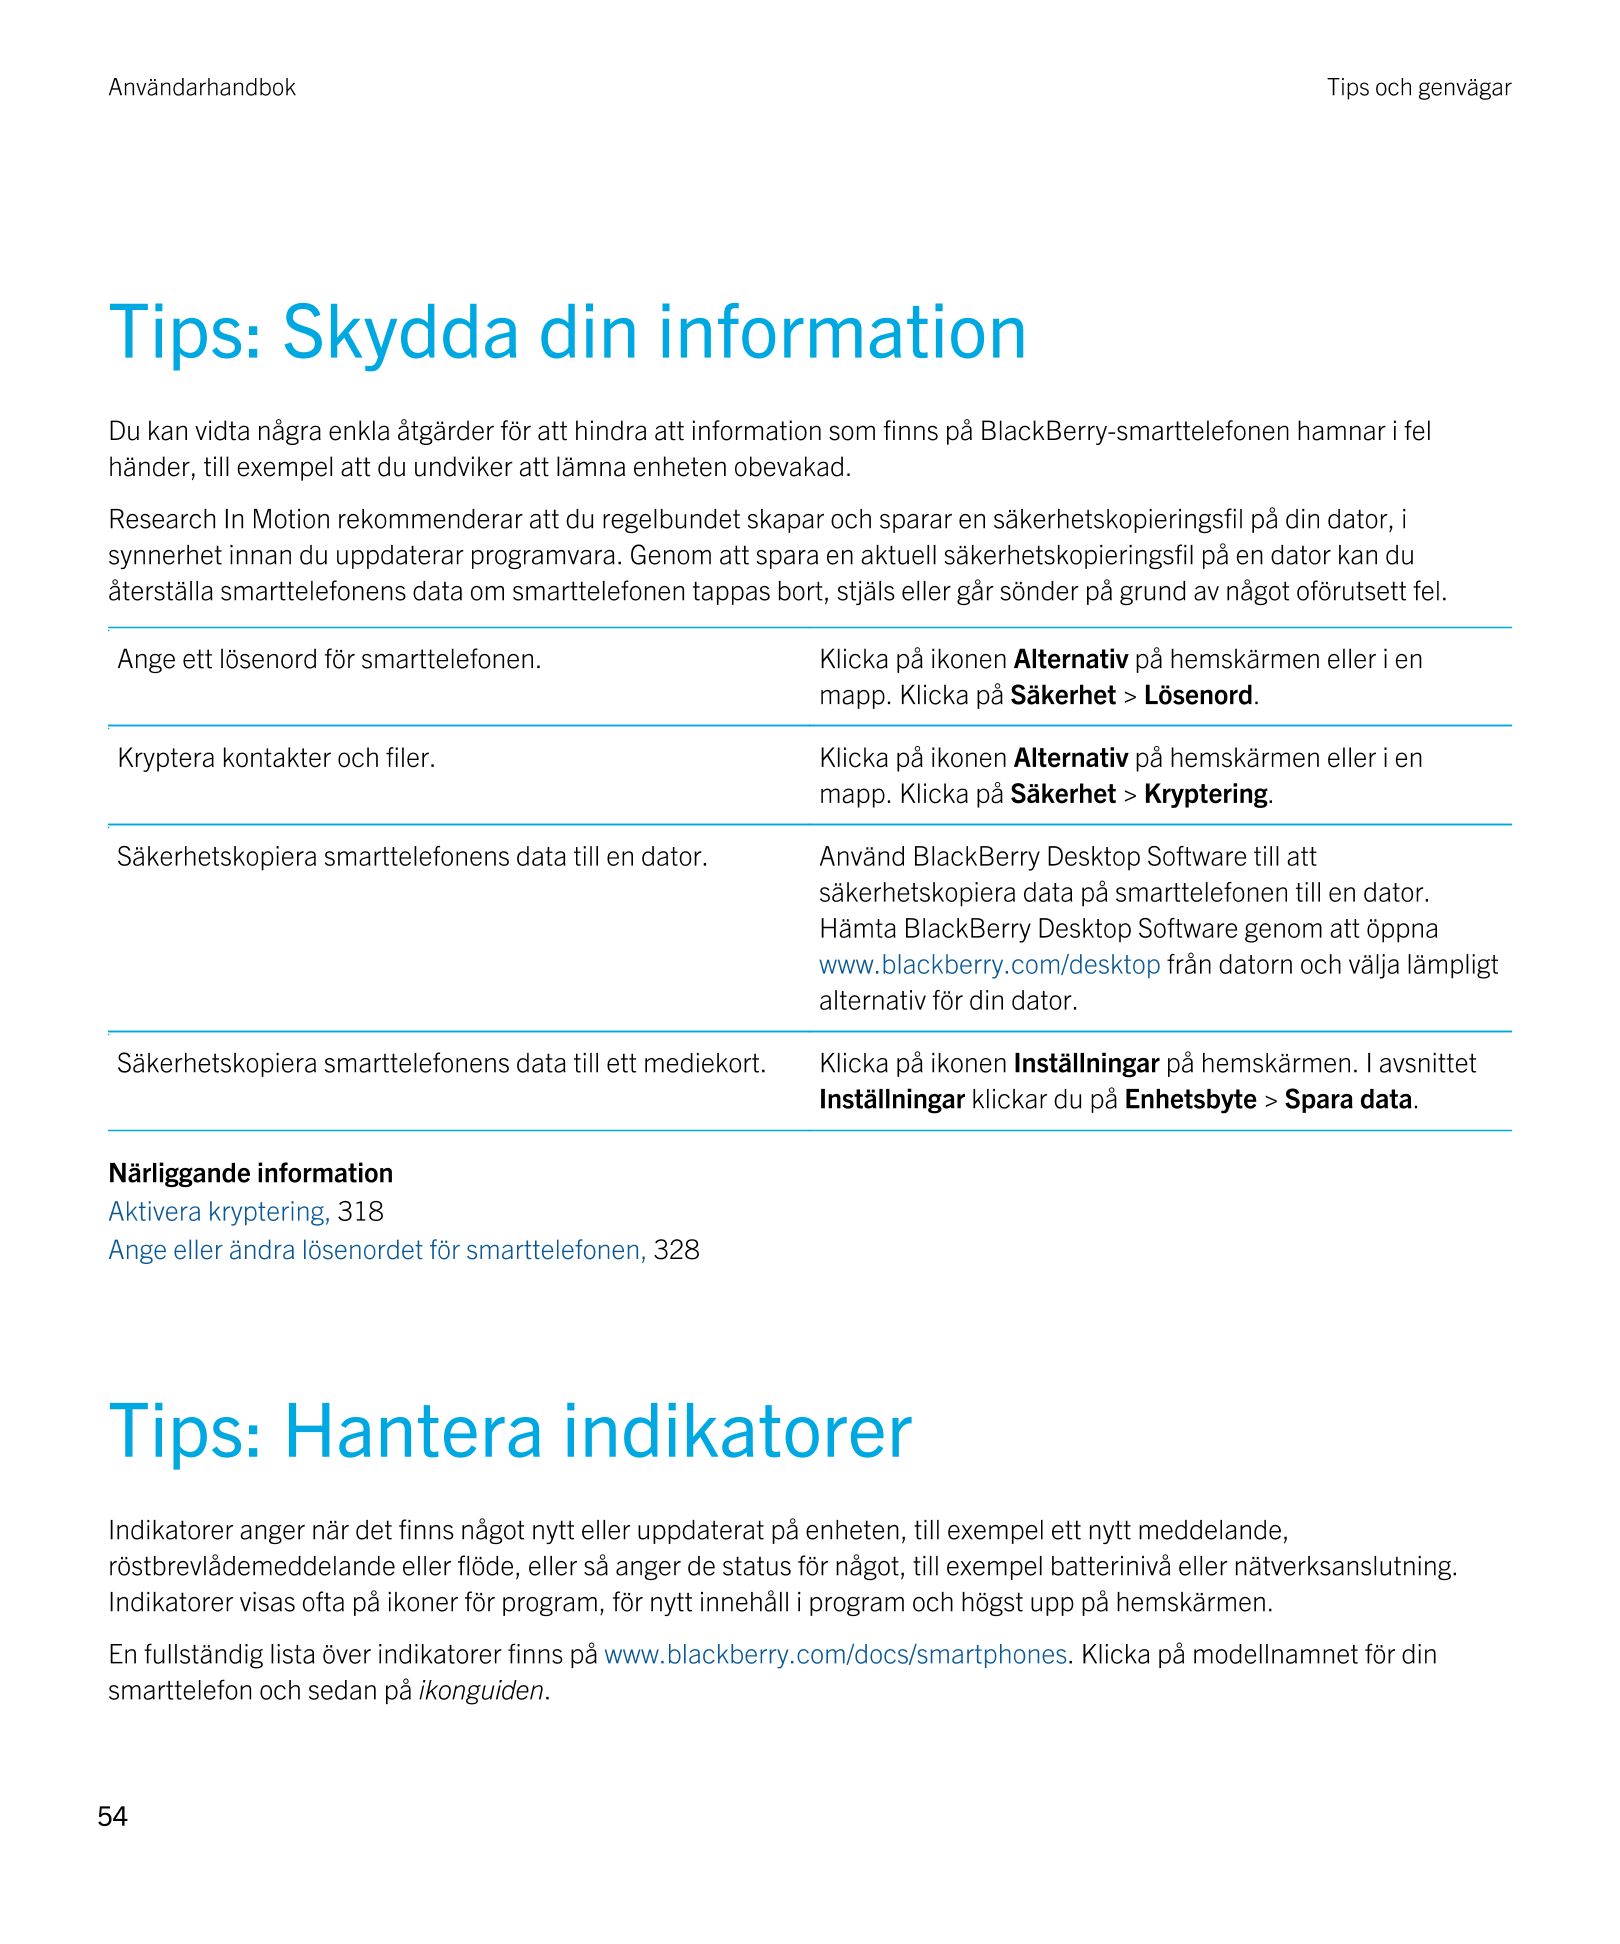 Användarhandbok Tips och genvägar
Tips: Skydda din information
Du kan vidta några enkla åtgärder för att hindra att information 